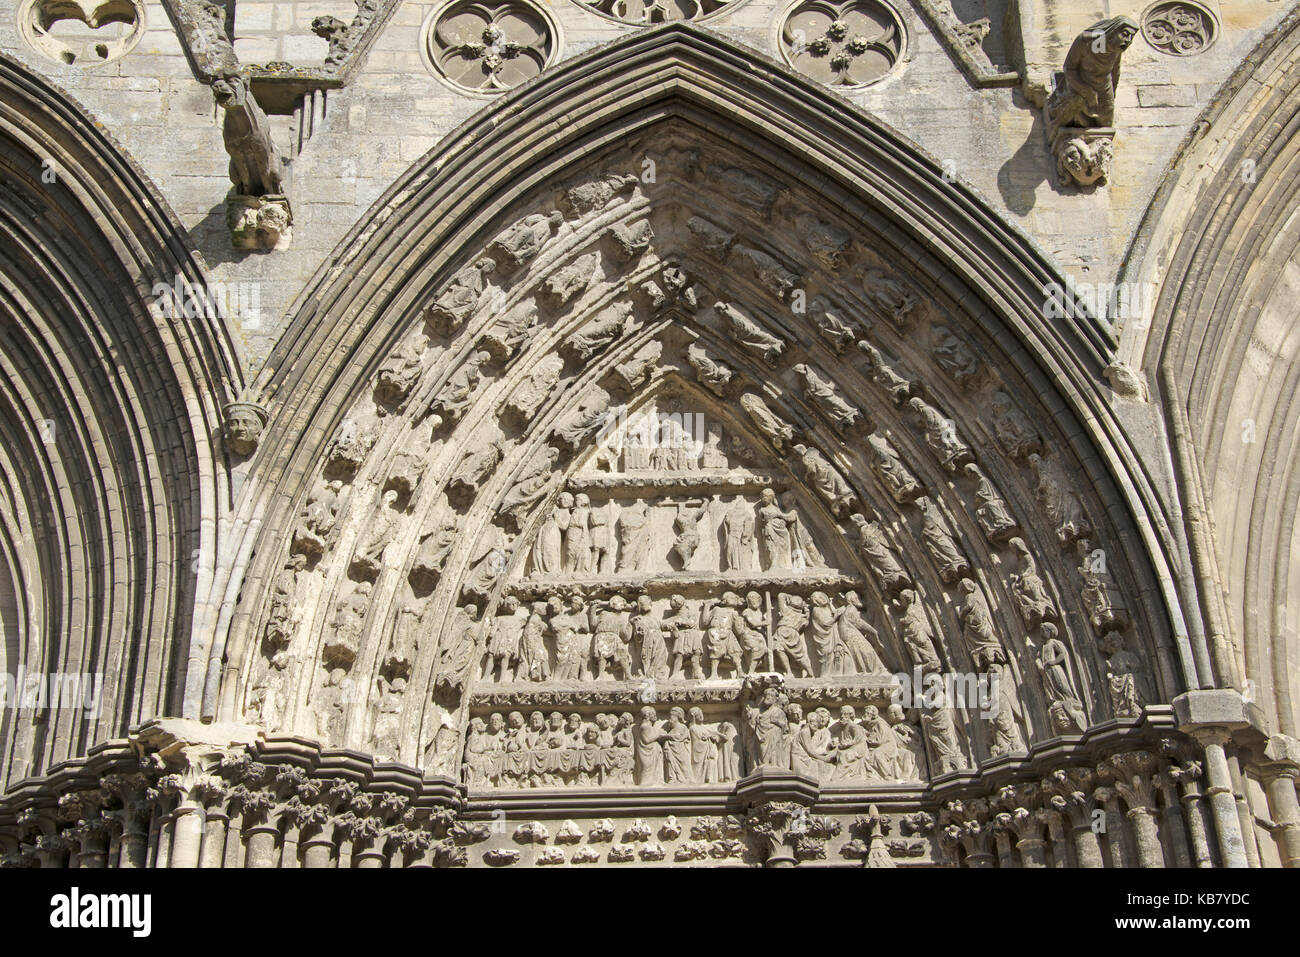 Détail de la scène biblique dans la pierre de la cathédrale de Bayeux Normandie France Banque D'Images